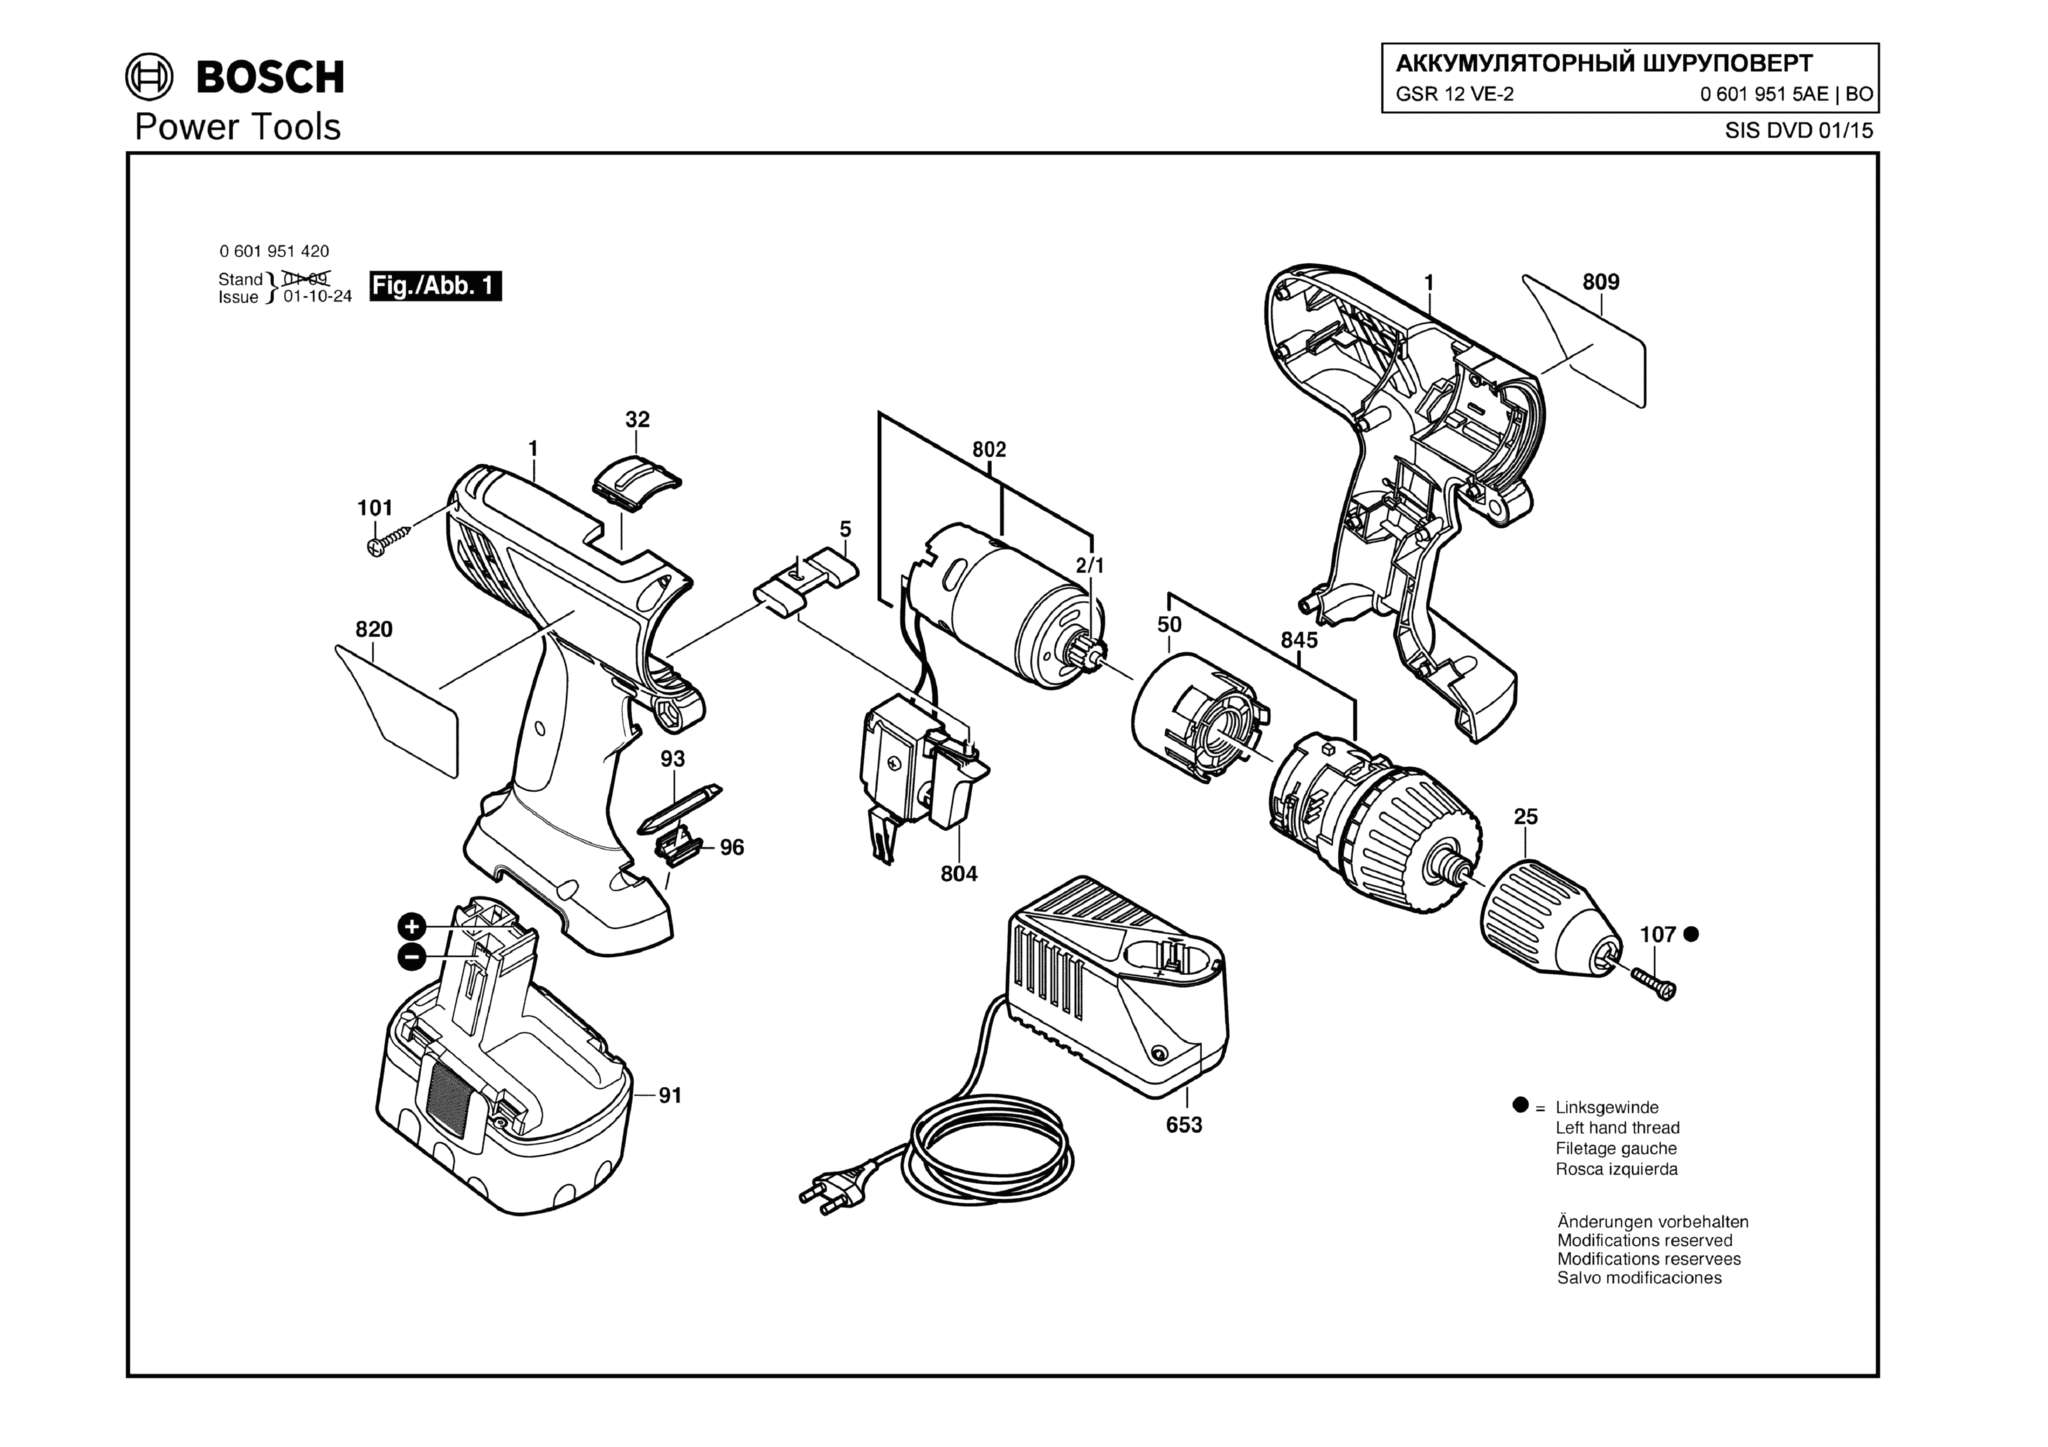 Запчасти, схема и деталировка Bosch GSR 12 VE-2 (ТИП 06019515AE)